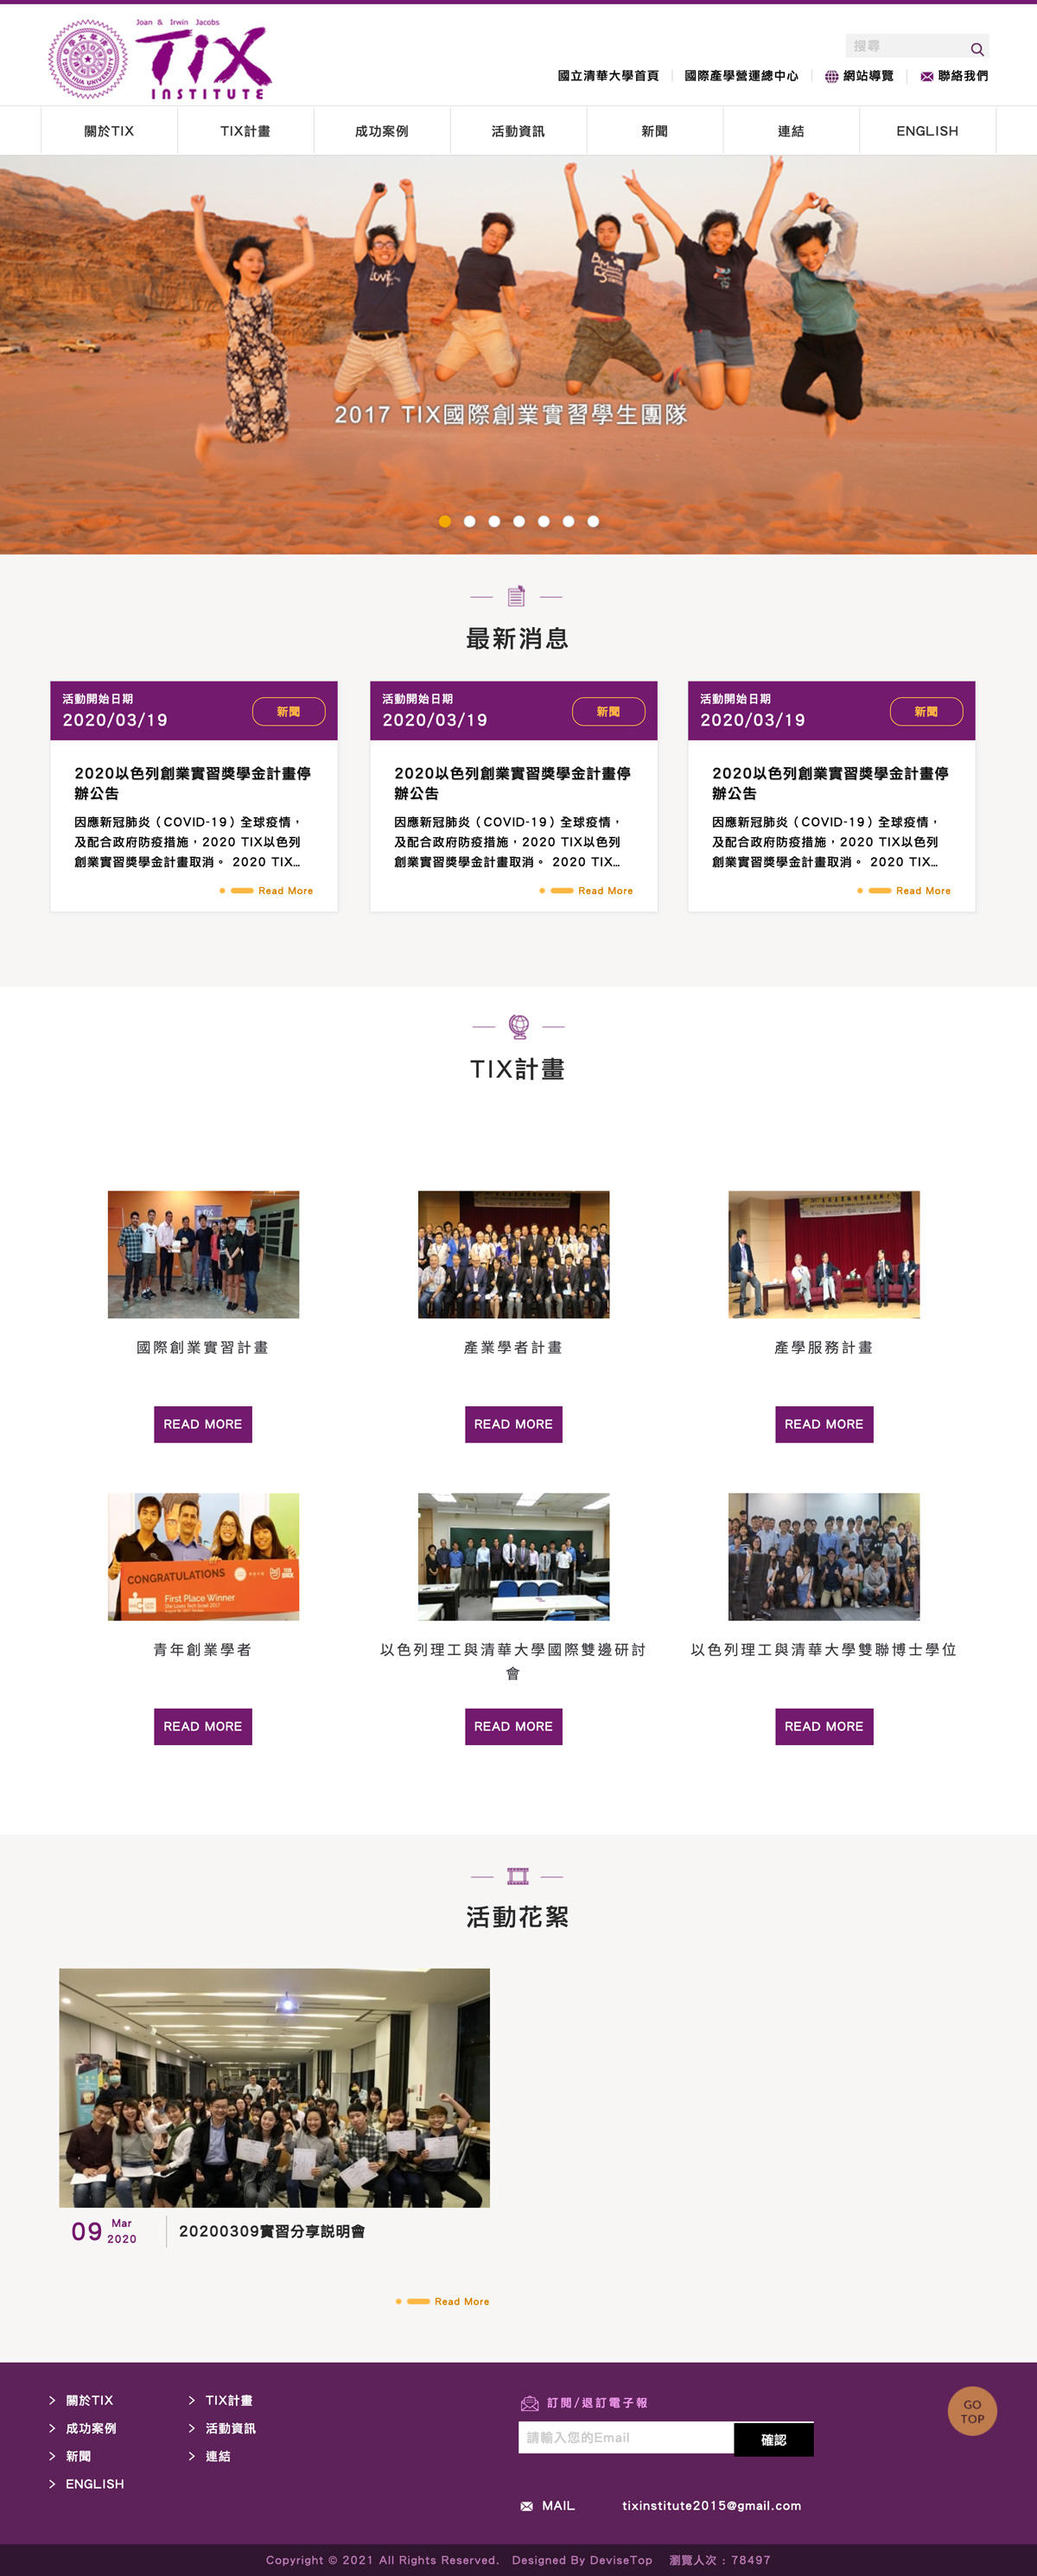 國立清華大學 - Tix計畫